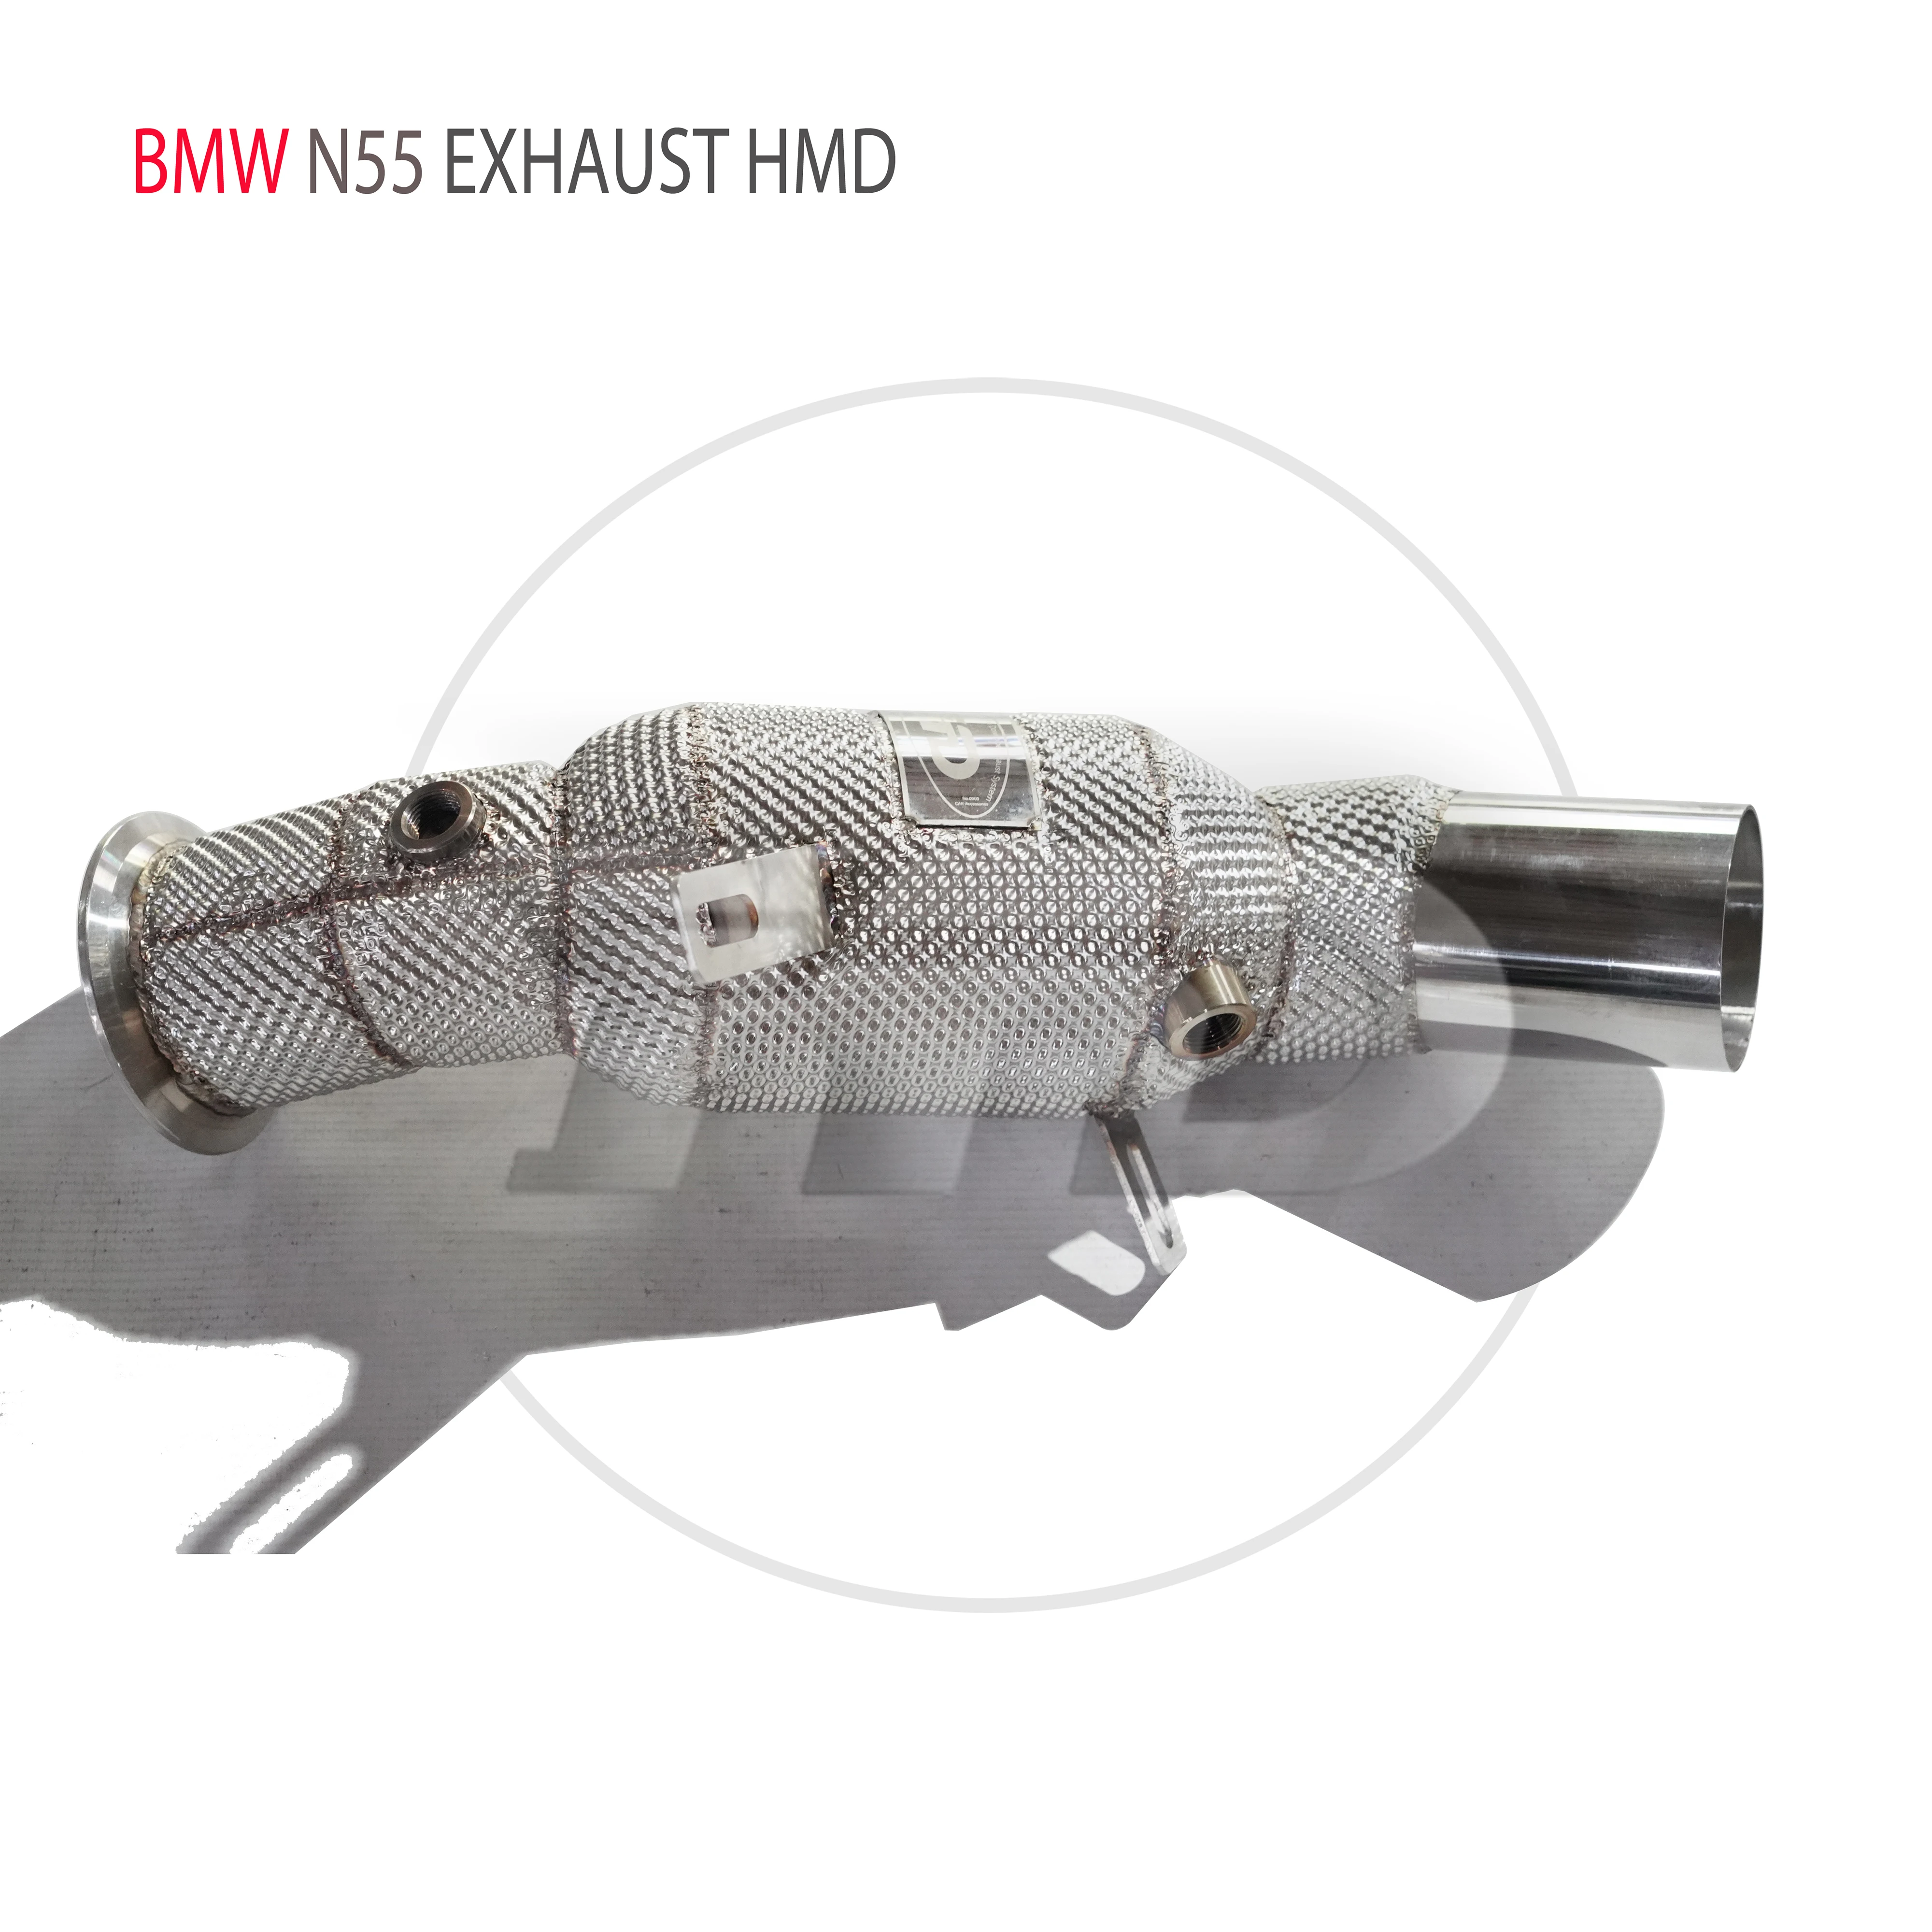 

HMD автомобильные аксессуары, выхлопная система, высокая производительность потока, водосточная труба для BMW 535i F18 N55 с каталитическим конвертером